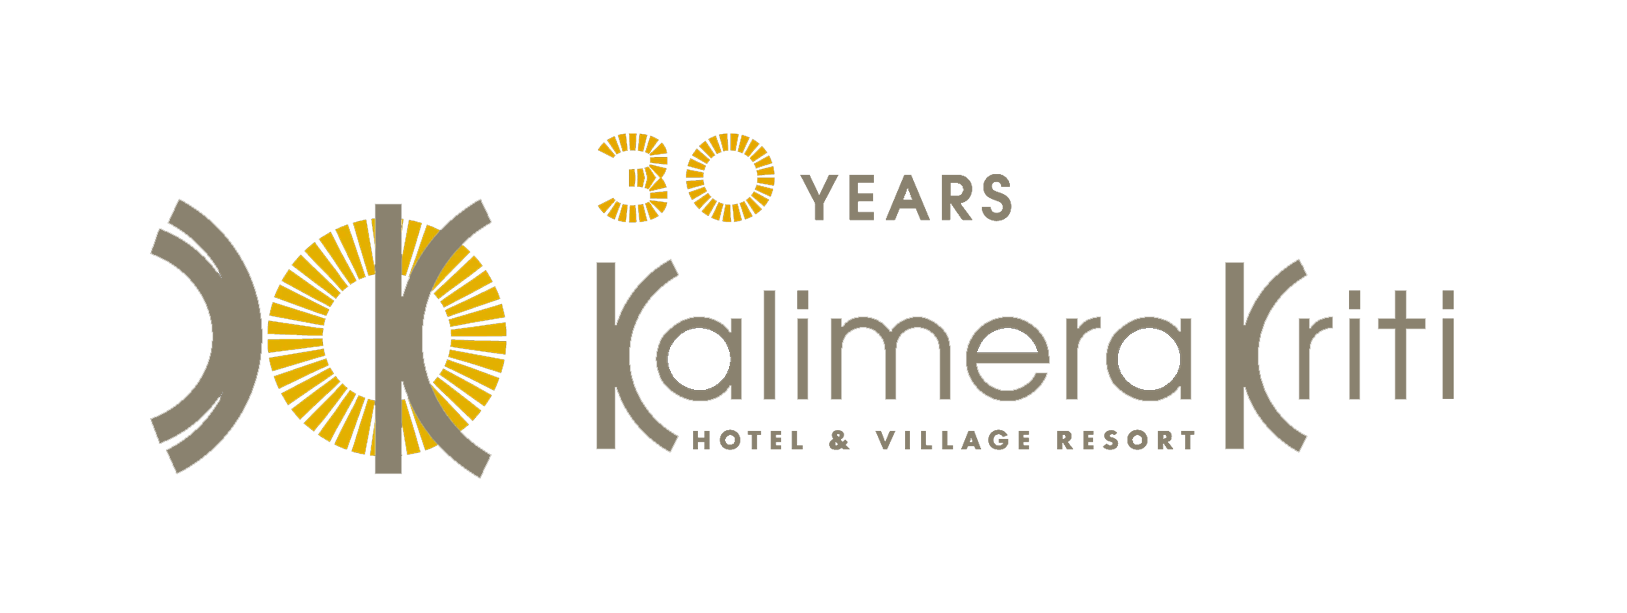 kalimera-kriti-logo-30years